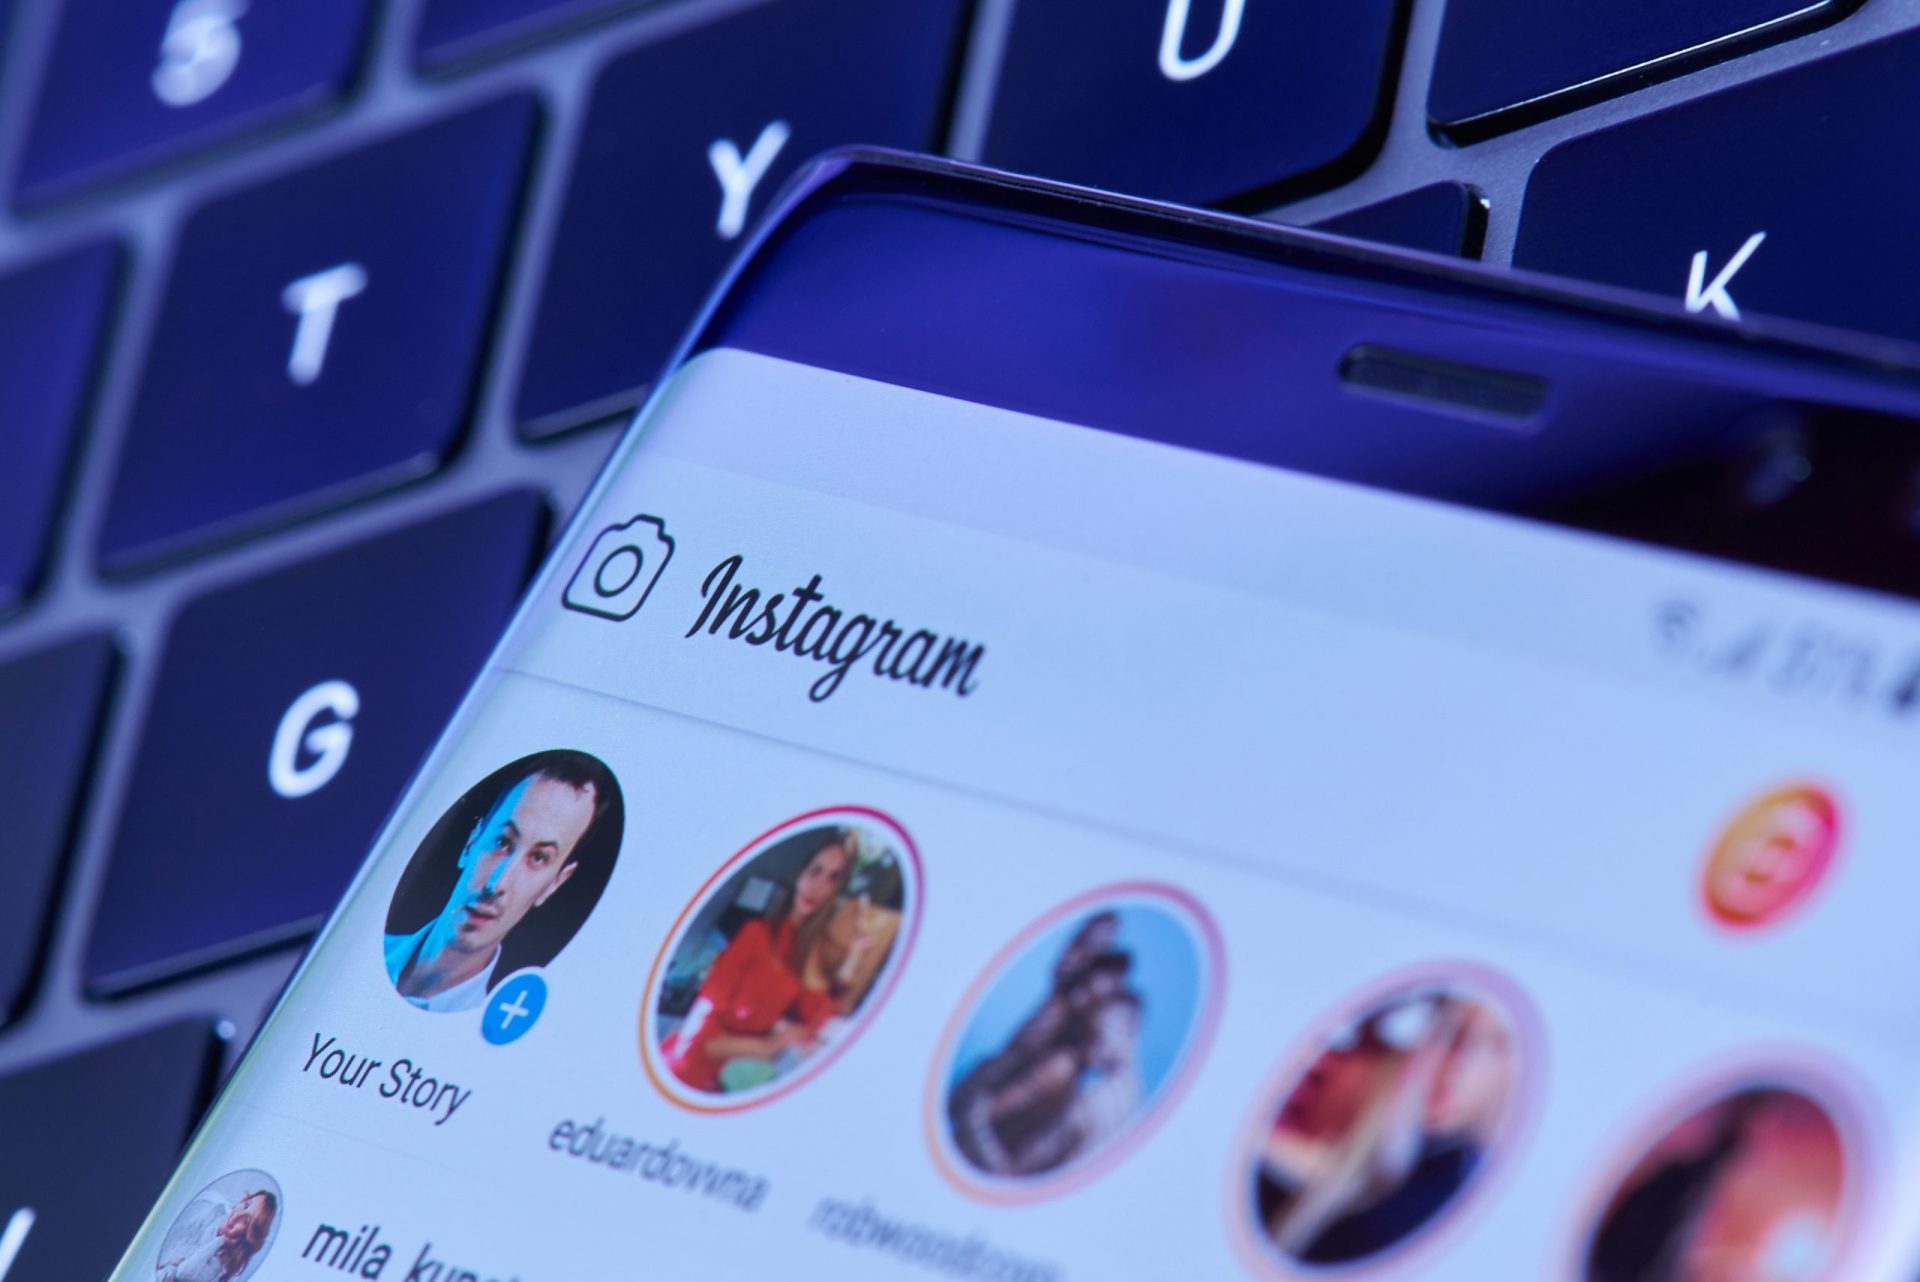 Contas suspensas e perda de seguidores. Milhares de utilizadores do Instagram reportam problemas